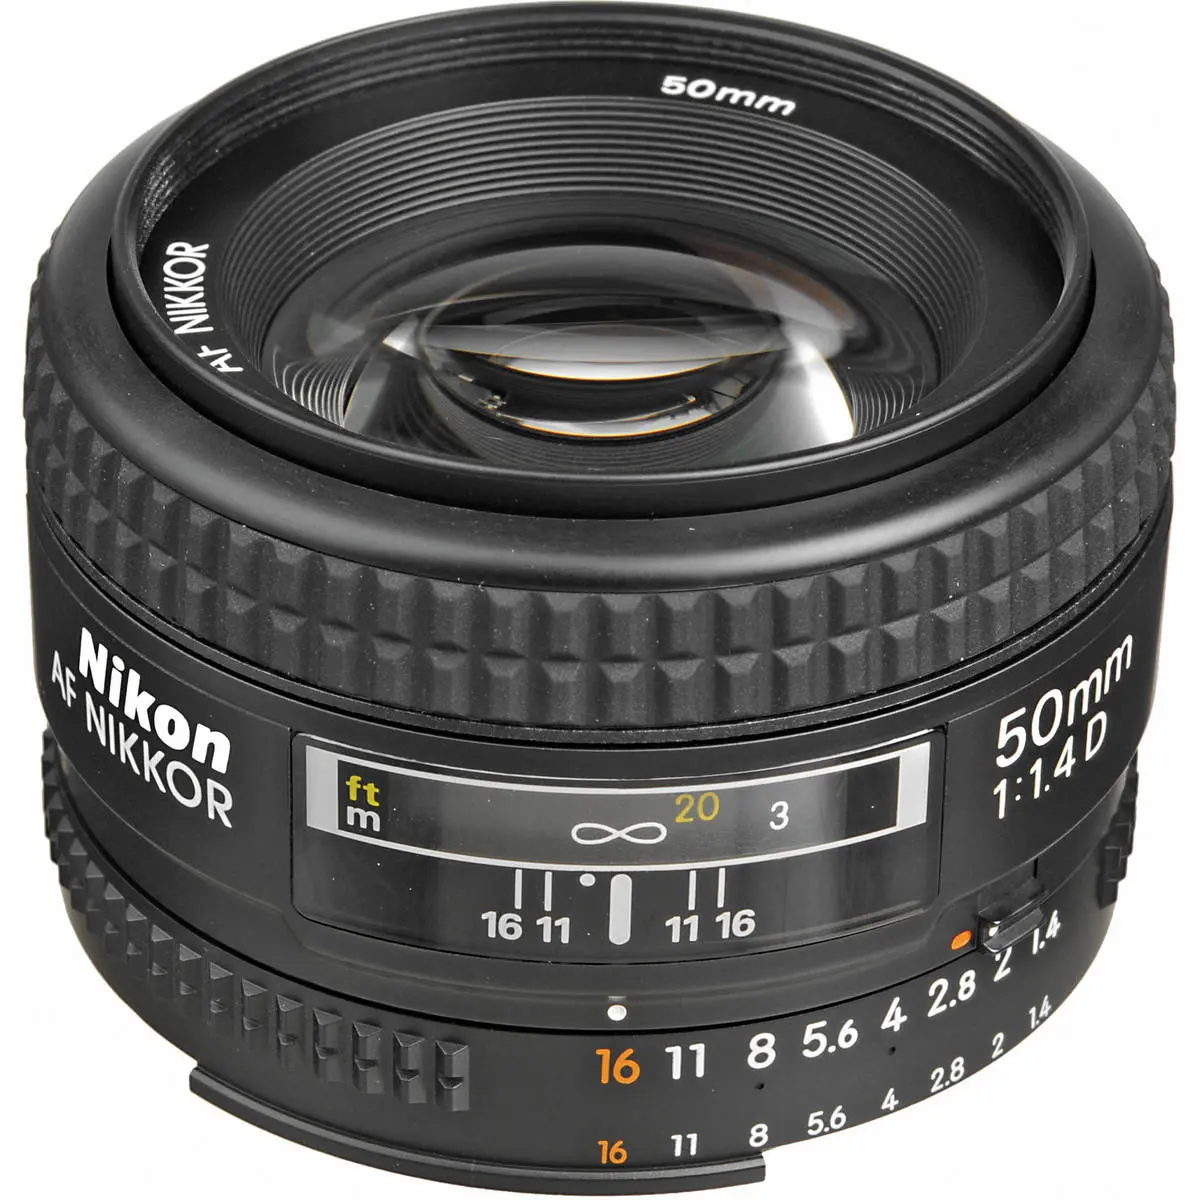 1. Nikon Nikkor AF 50mm 50 f/1.4 D F1.4 D Lens